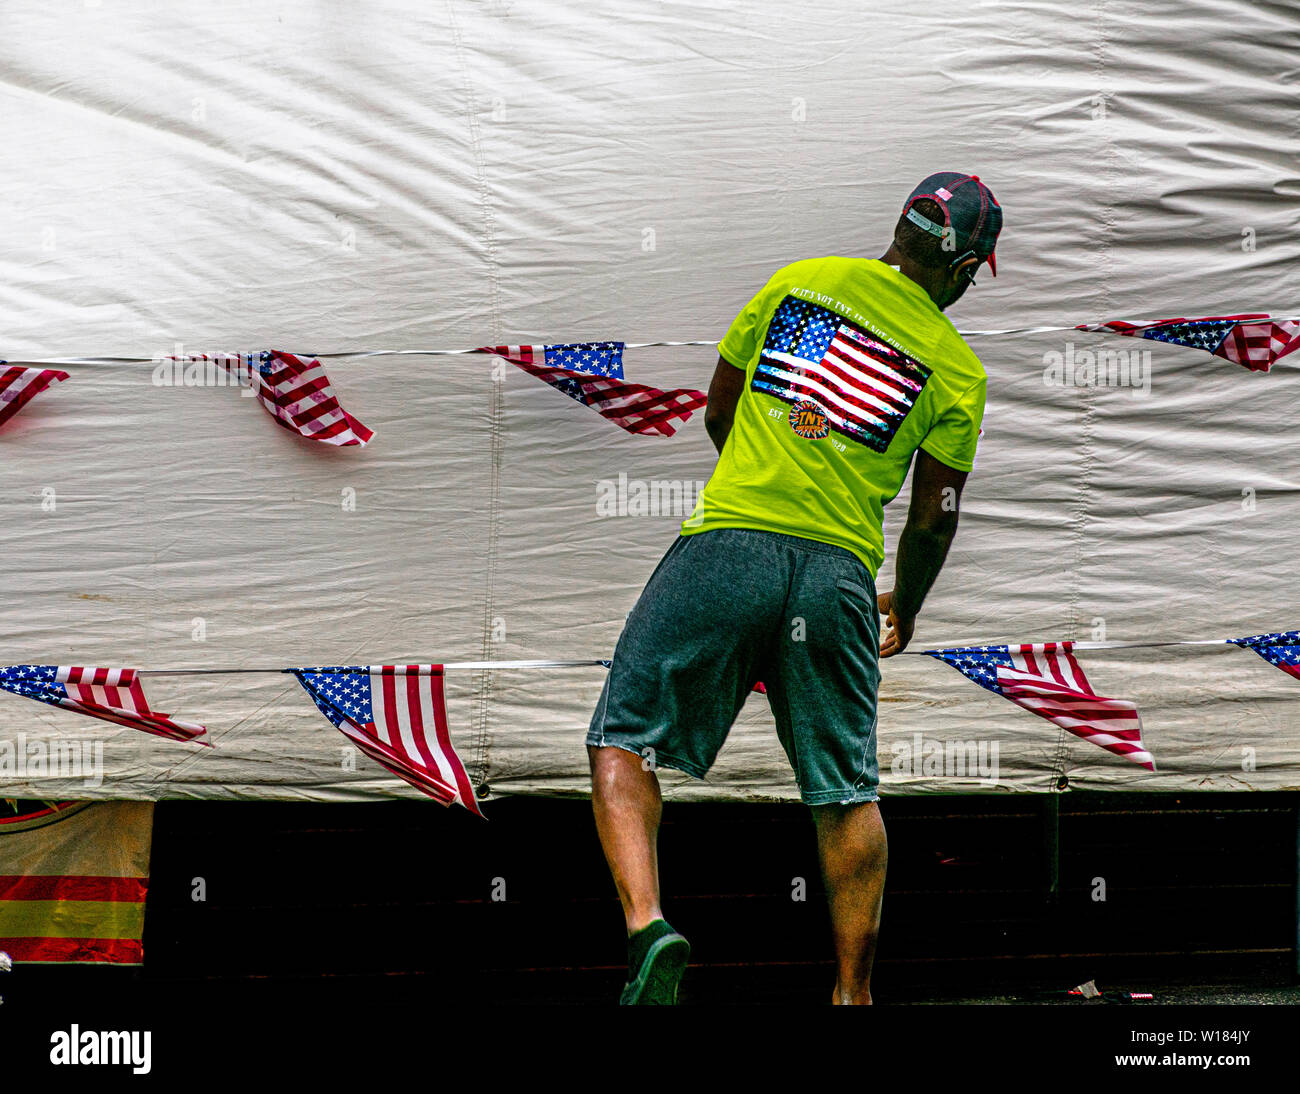 Un homme portant un tee-shirt avec un drapeau américain se trouve devant une ligne de vêtements dont plusieurs petits drapeaux américains sont accroché. Banque D'Images